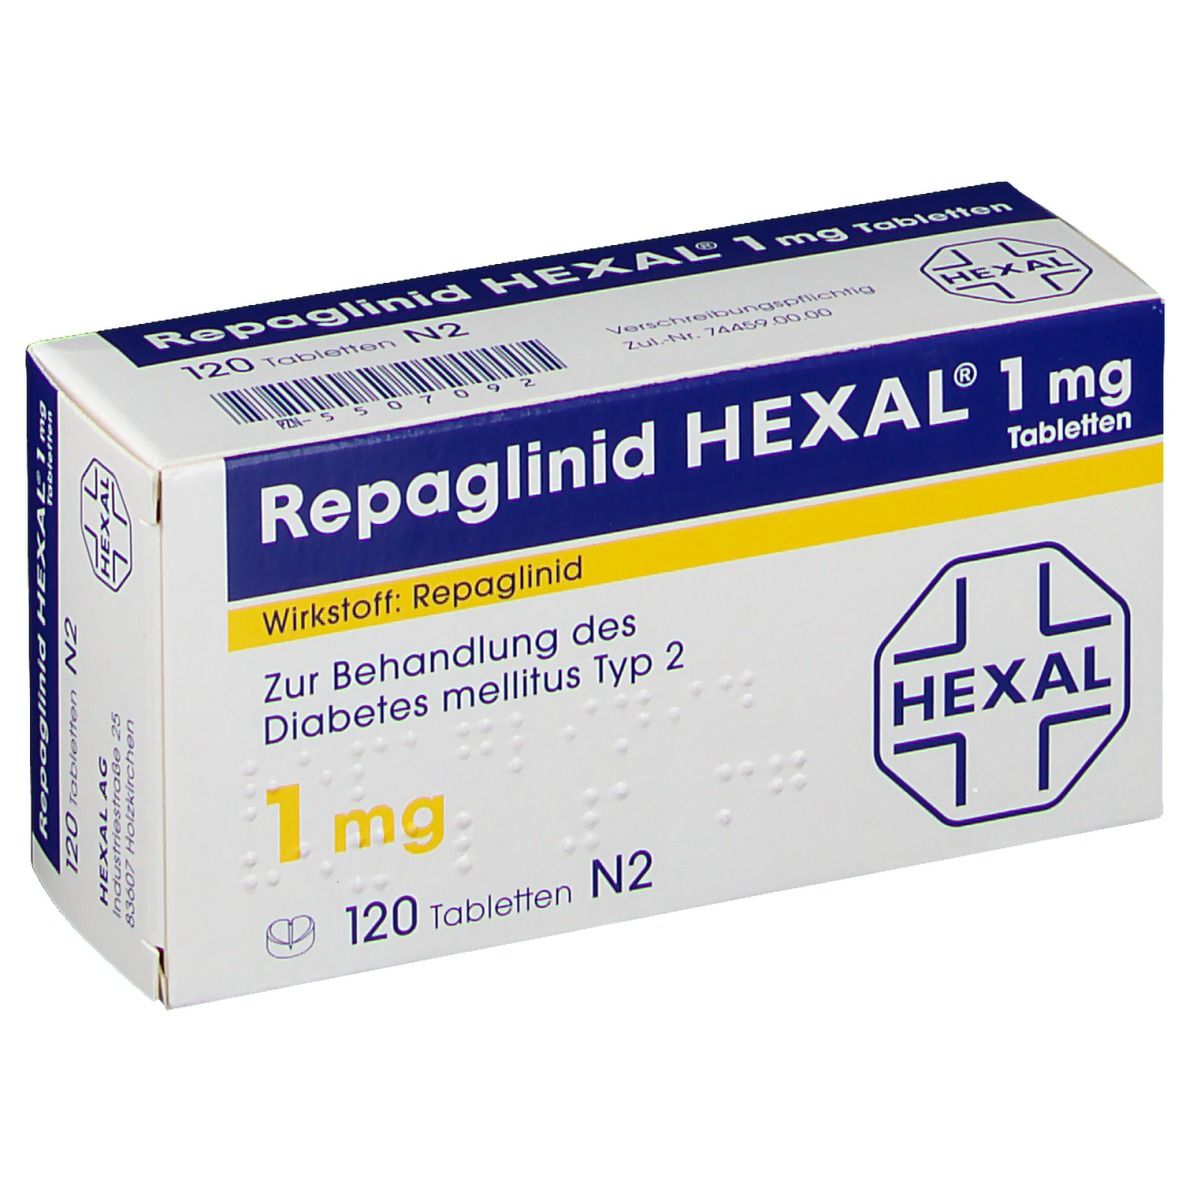 Repaglinid Hexal 1 mg Tabletten